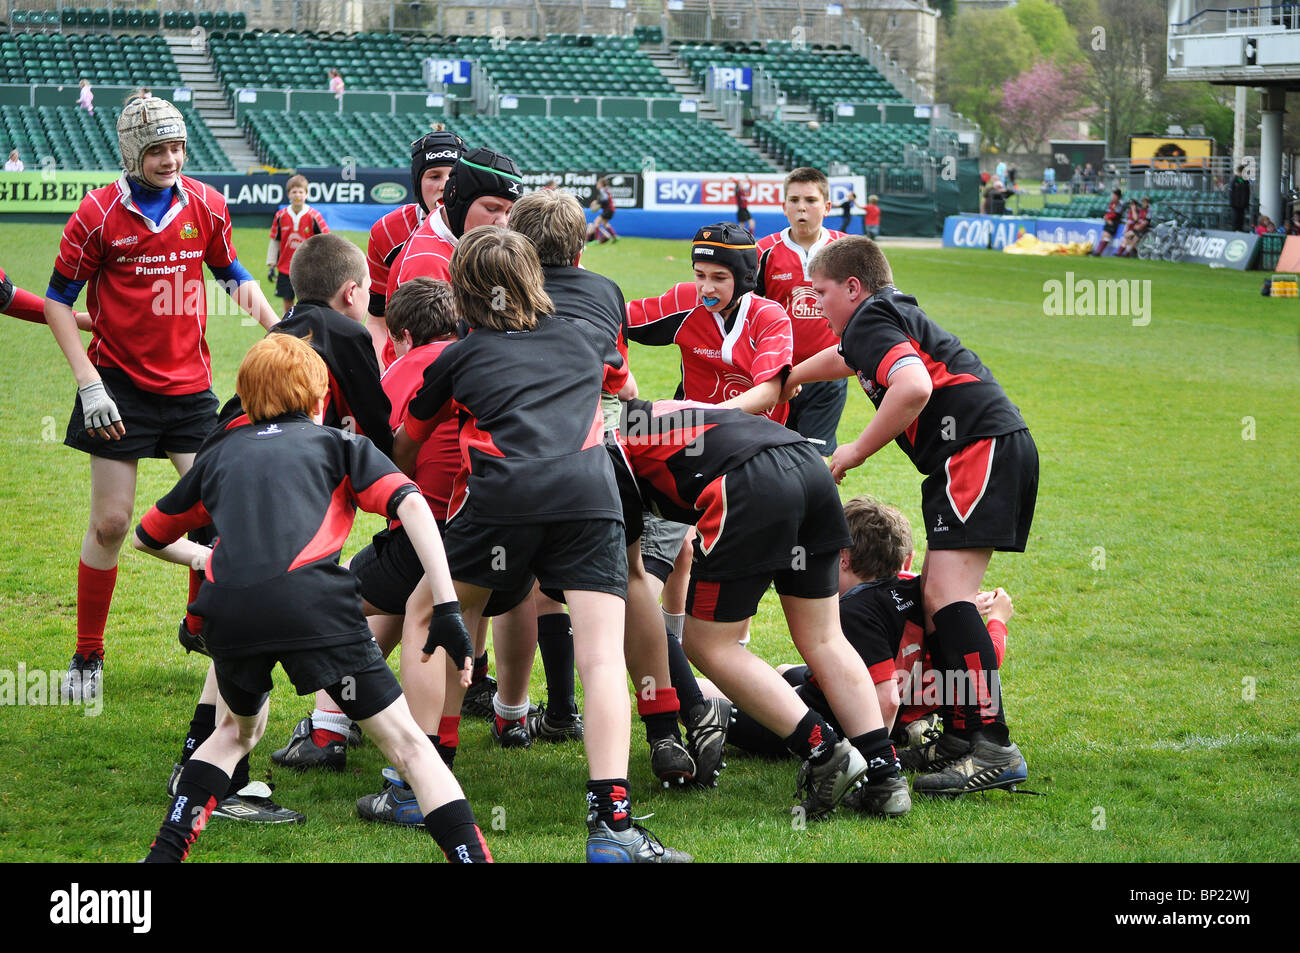 Les jeunes garçons à jouer au rugby, Bath, Angleterre, Royaume-Uni Banque D'Images